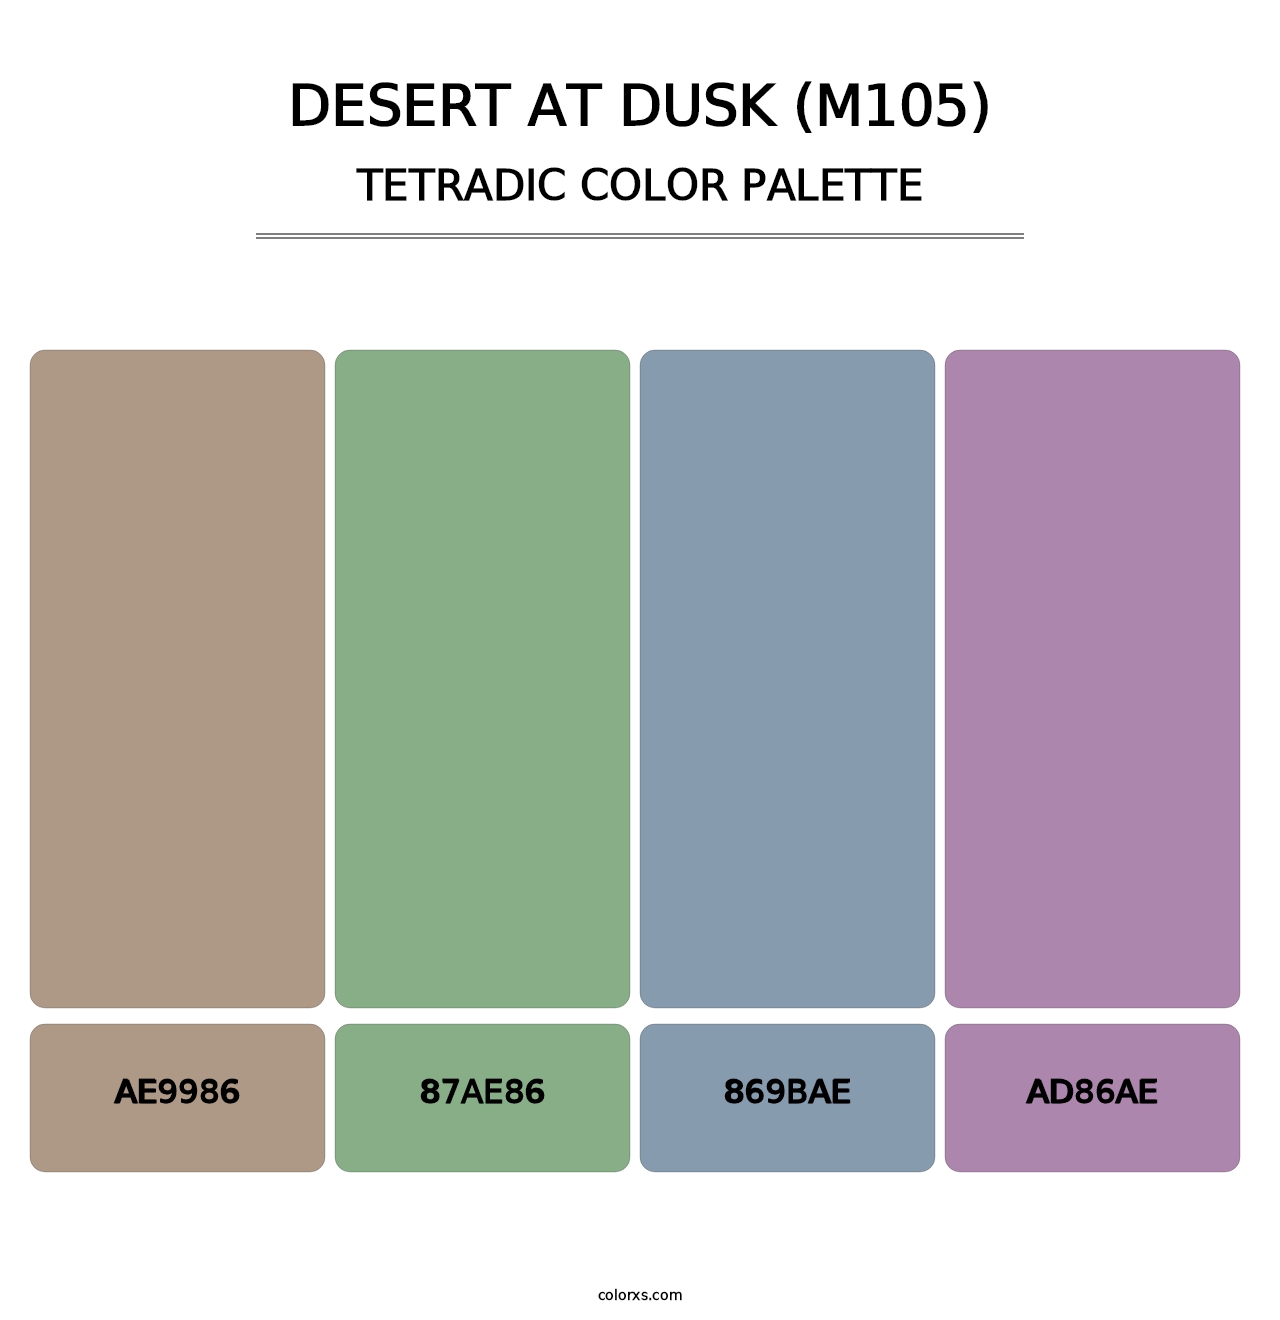 Desert at Dusk (M105) - Tetradic Color Palette